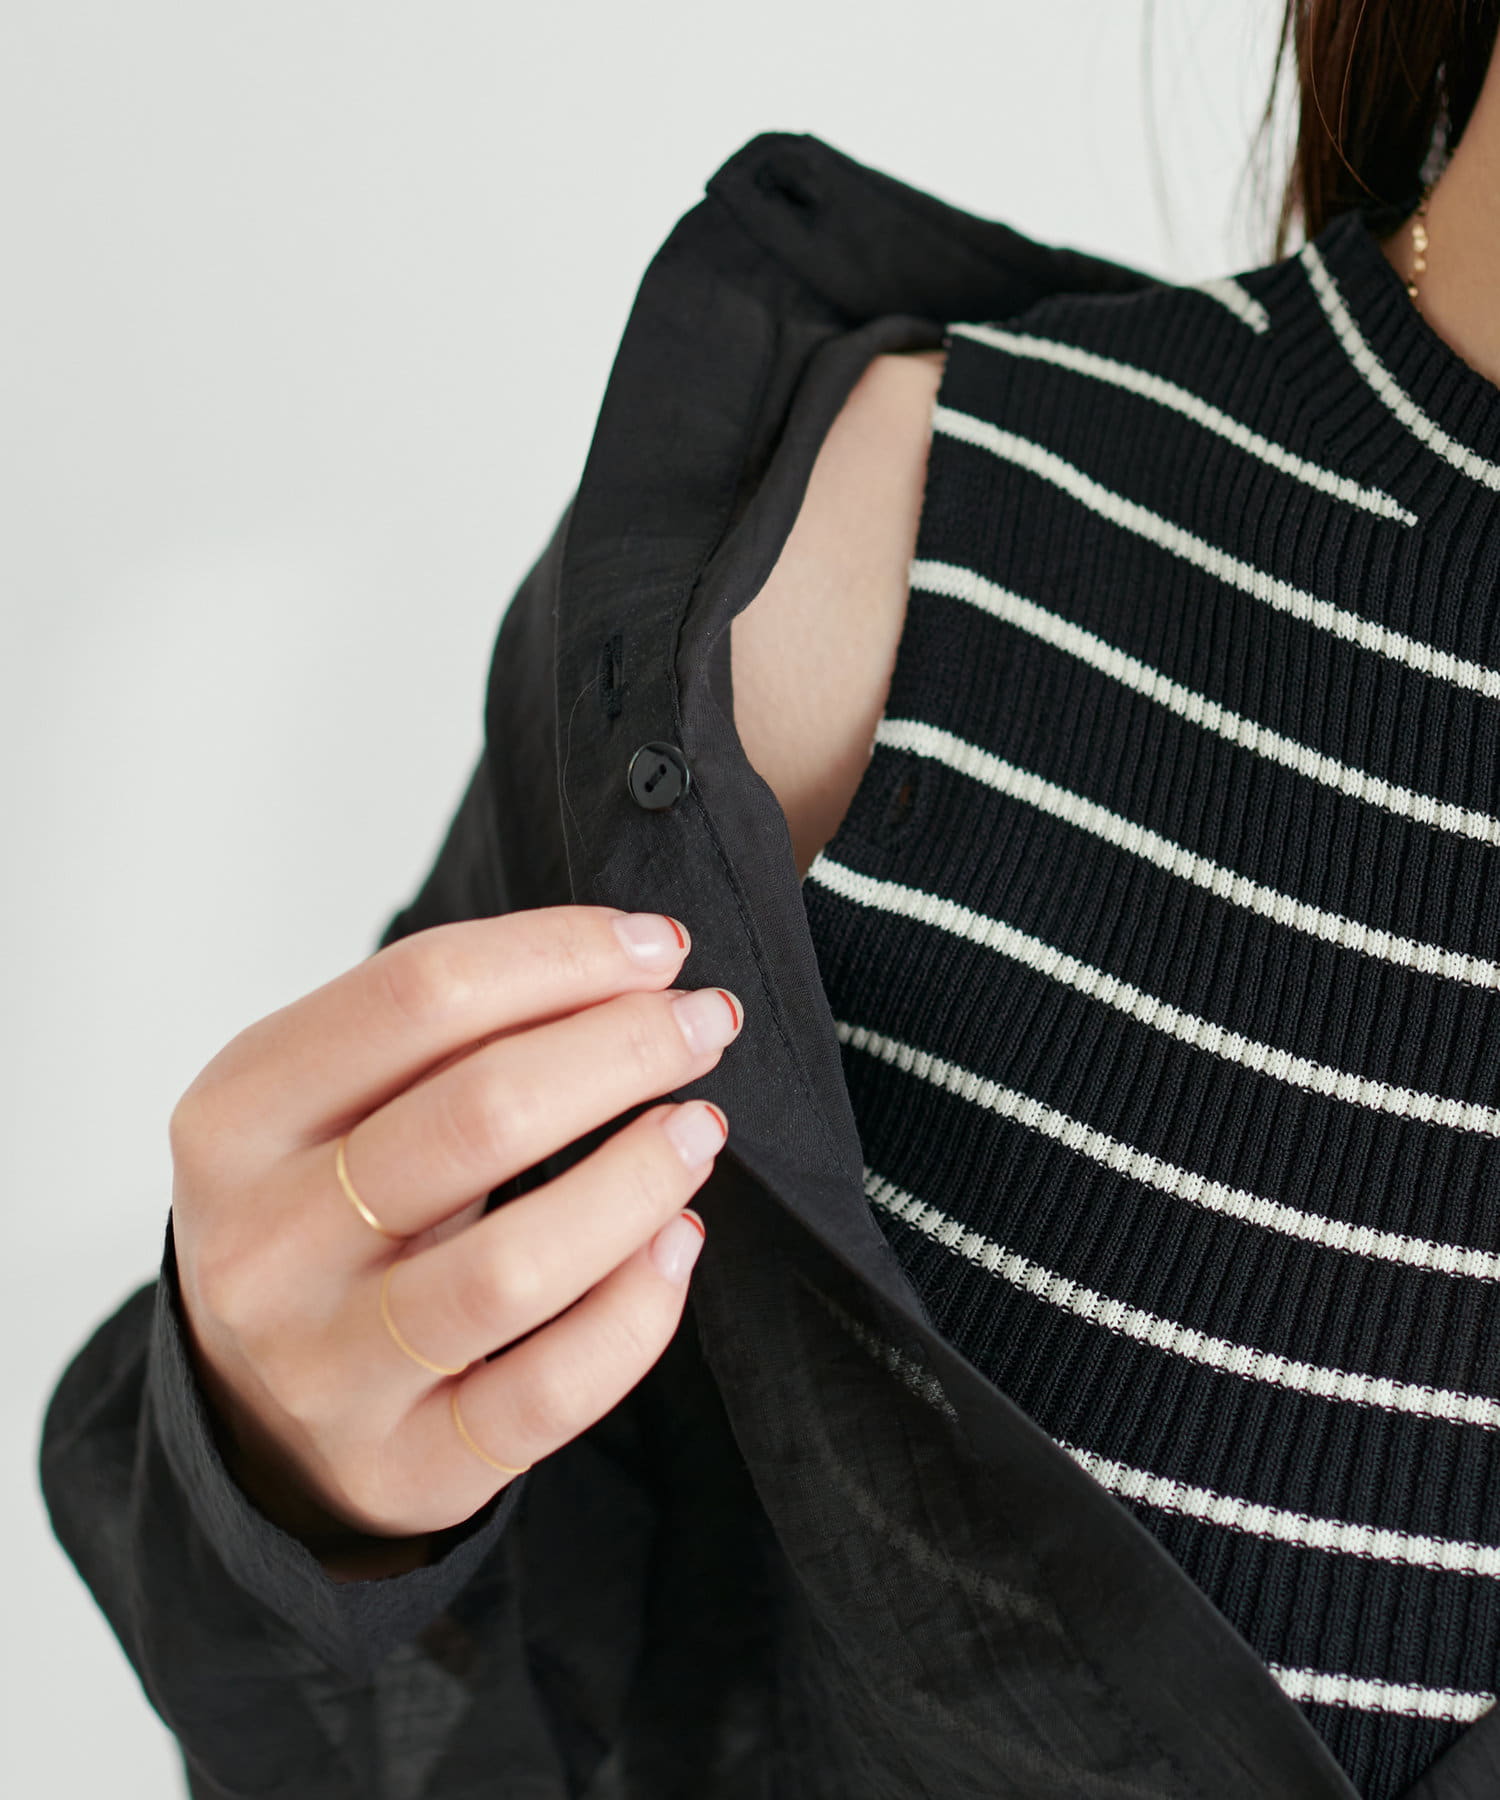 natural couture(ナチュラルクチュール) WEB限定カラー有り/コレ1着でコーデが決まる  シアーシャツ×リブニットセット